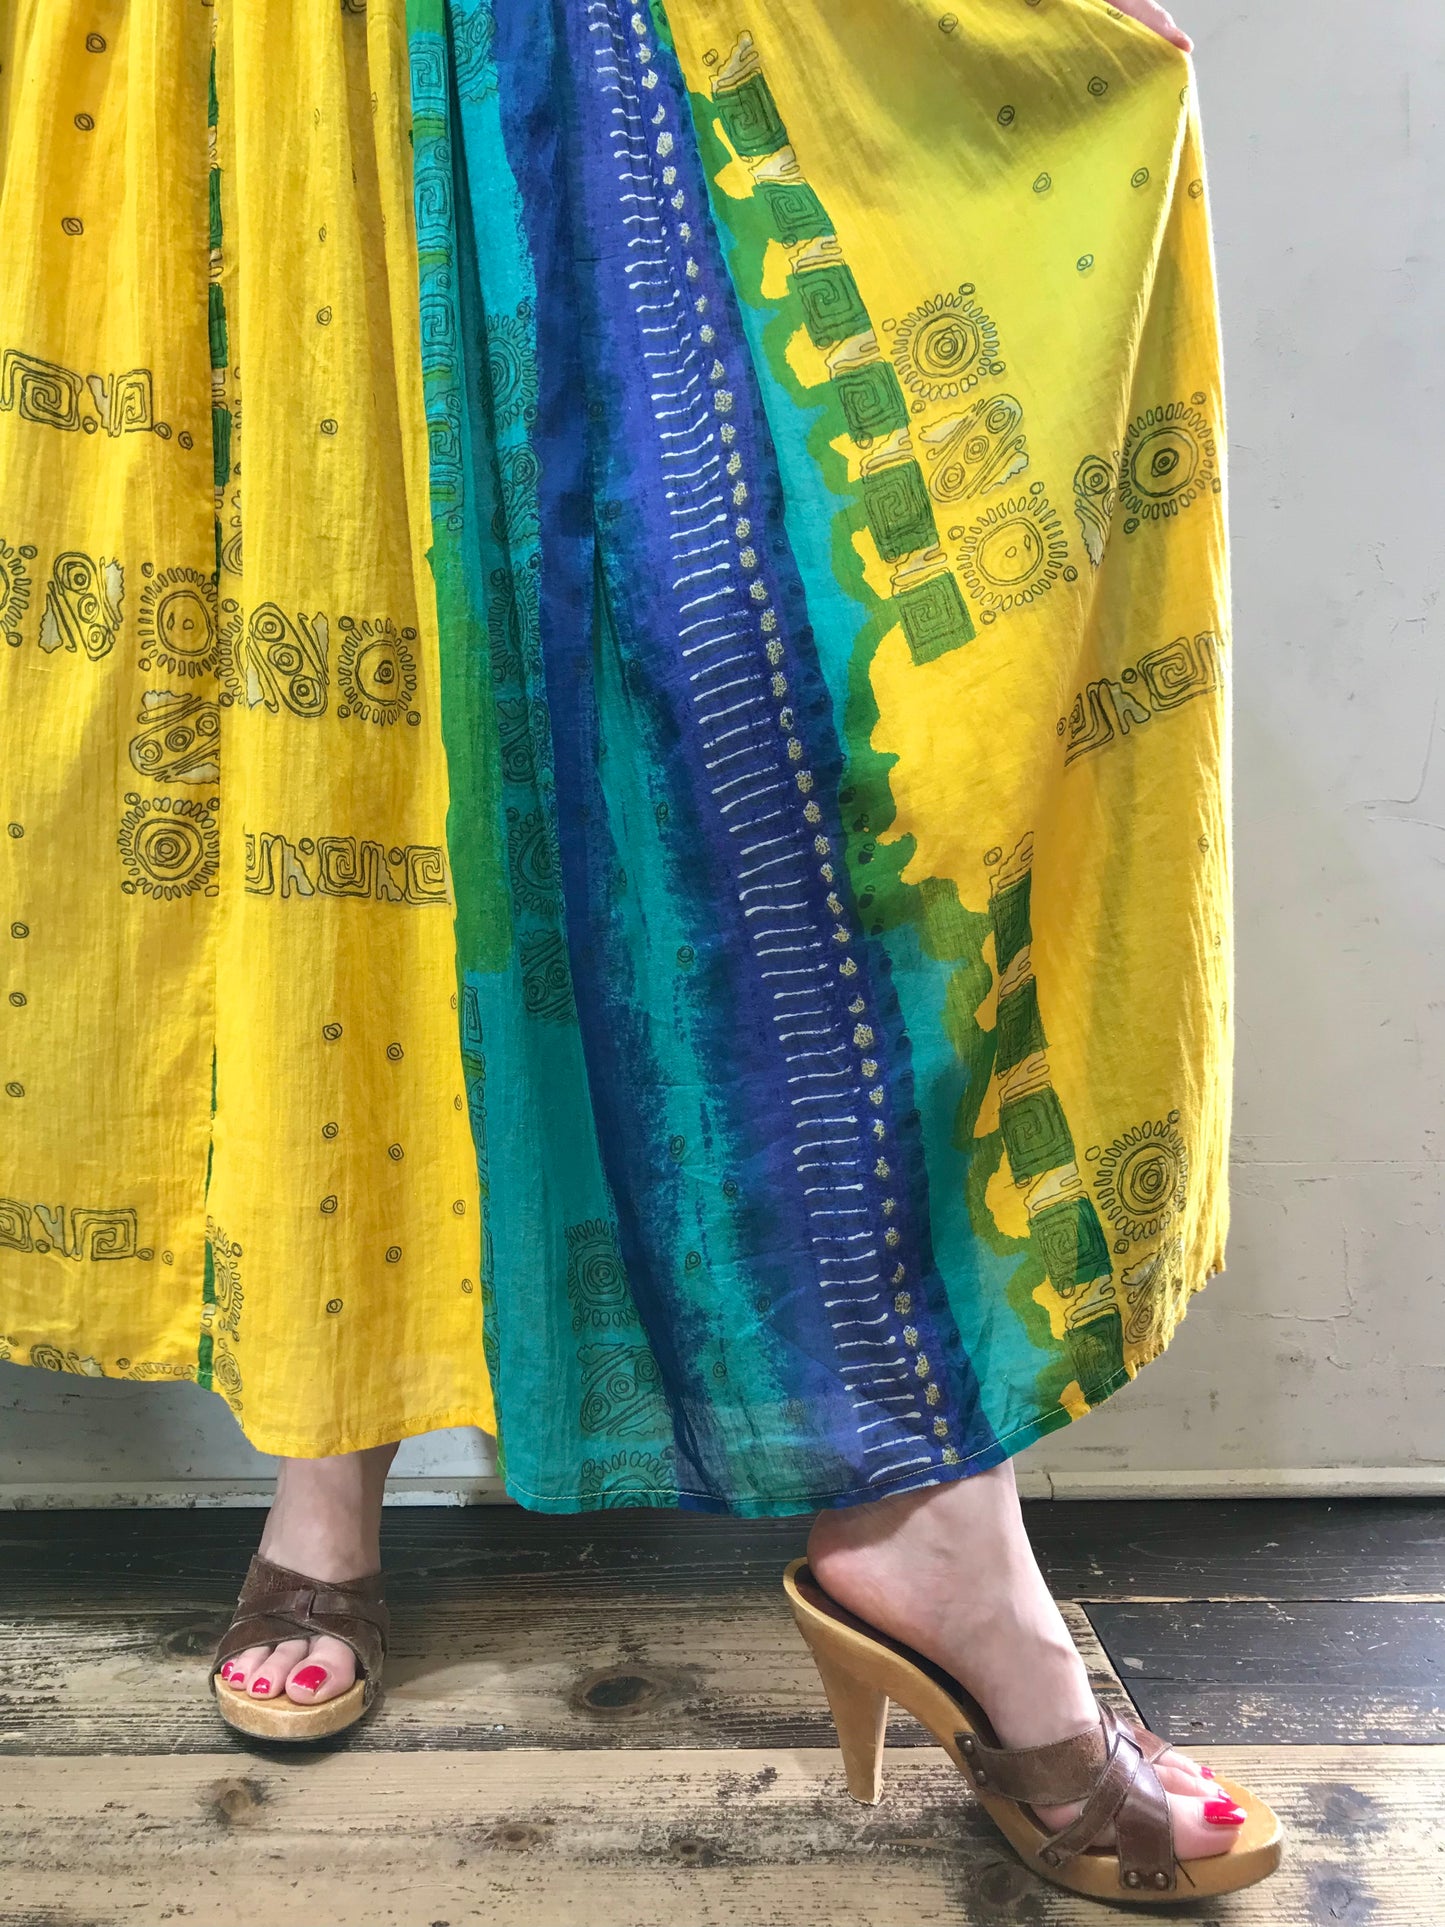 Vintage Indian Cotton Dress [H17372]